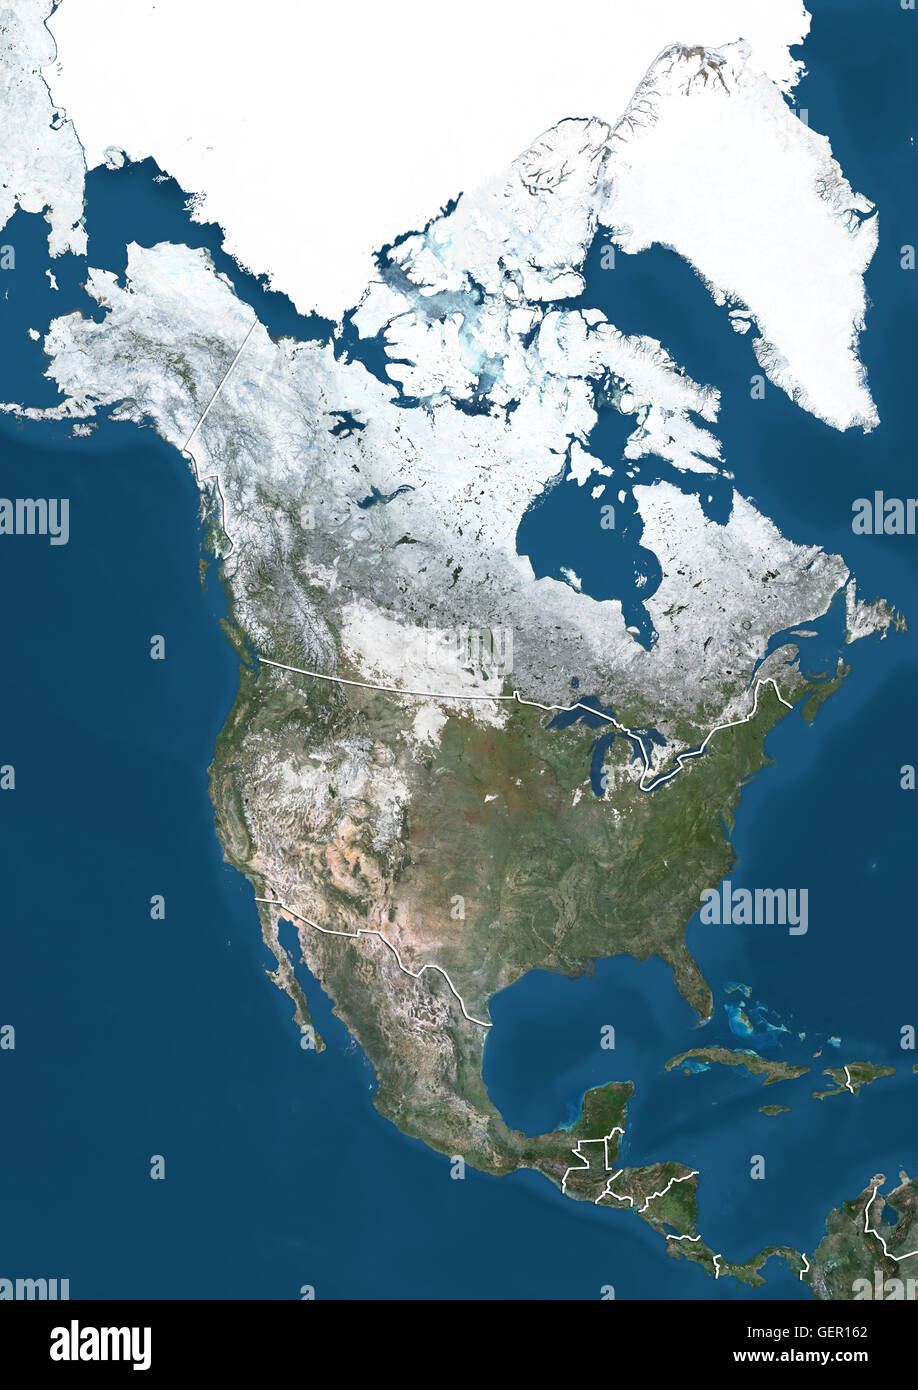 Vue Satellite de l'Amérique du Nord en hiver, avec vue partielle de la couverture de neige et les glaces de l'Arctique (avec des frontières). Cette image a été compilé à partir de données acquises par les satellites Landsat 7 et 8. Banque D'Images